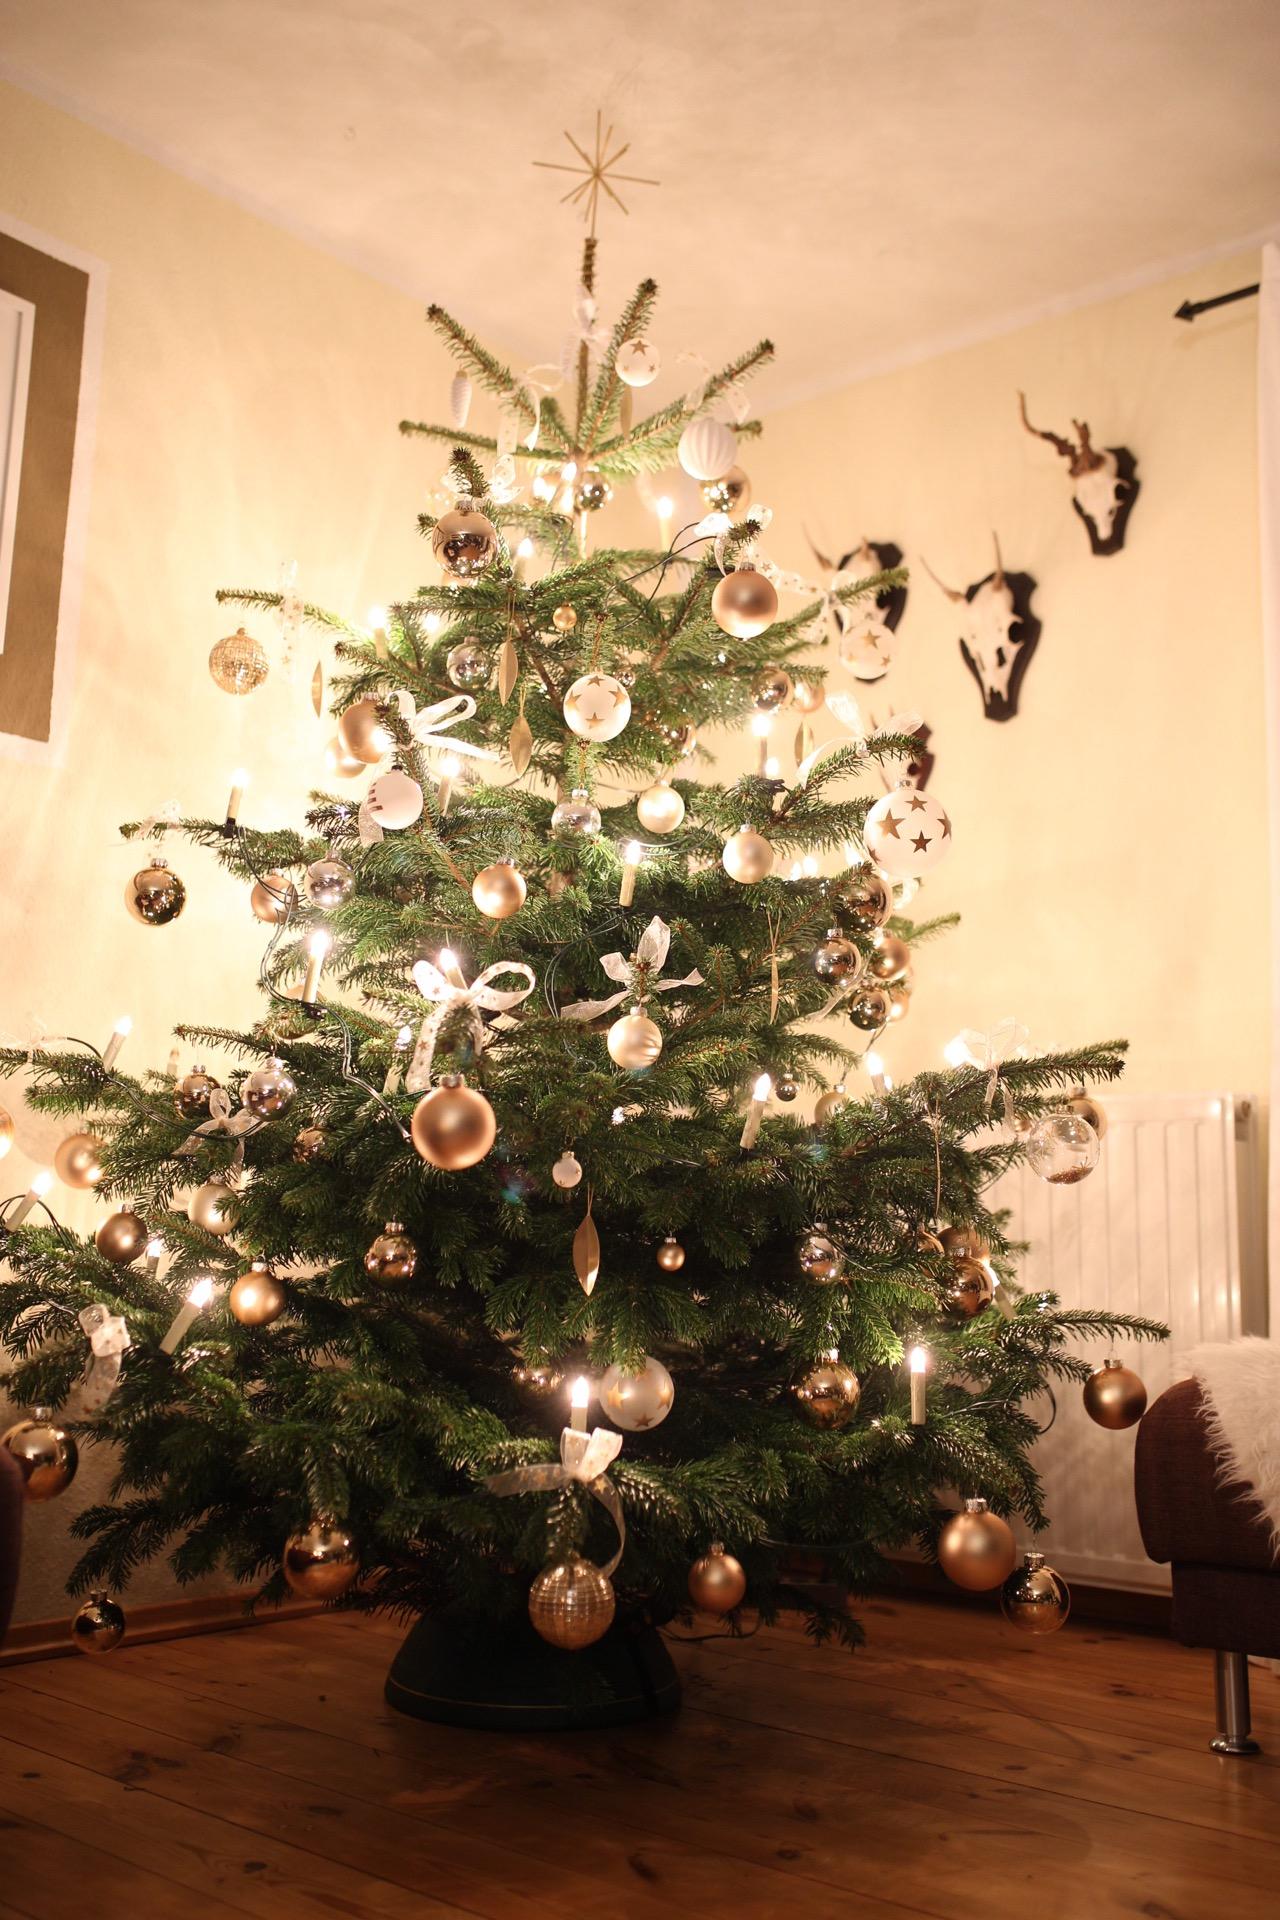 Mein Weihnachtsbaum in gold #weihnachten #weihnachtsbaum #fermliving #gold